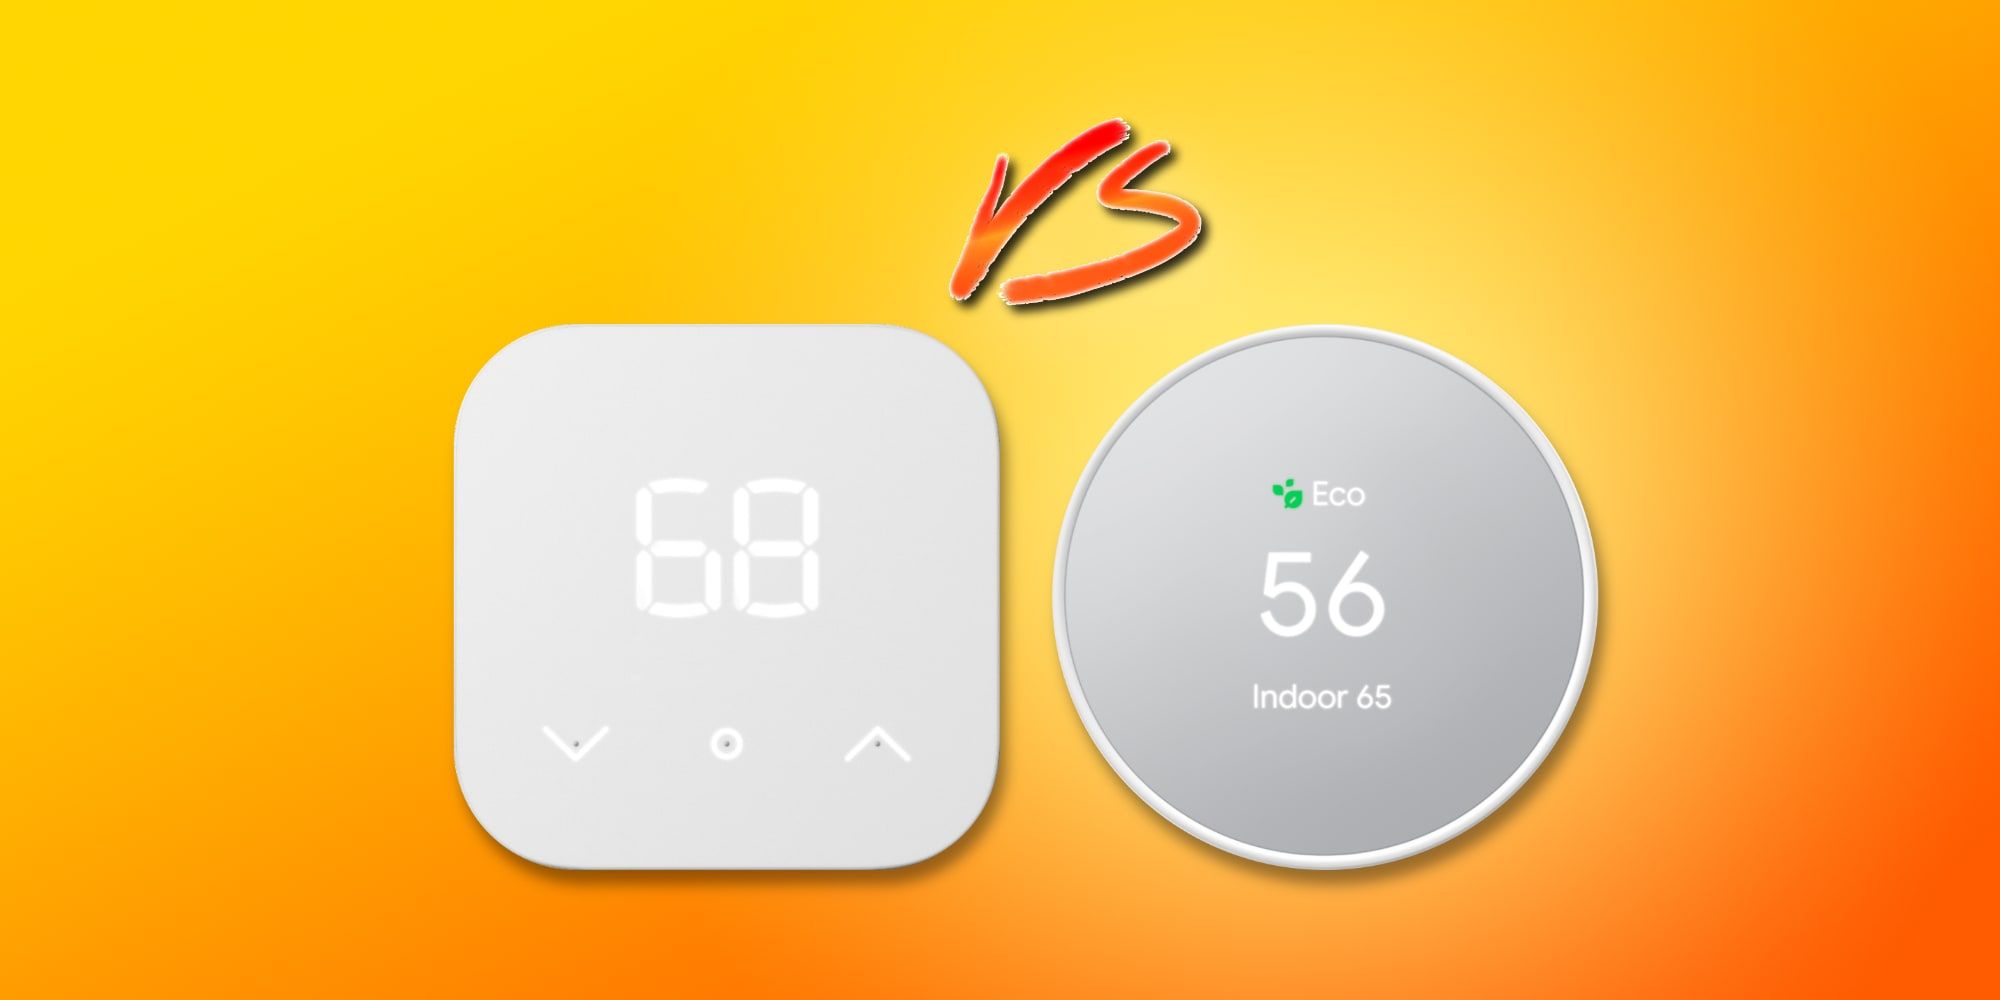 Termostato inteligente de Amazon vs.  Termostato Nest: ¿Google vale $ 70 más?